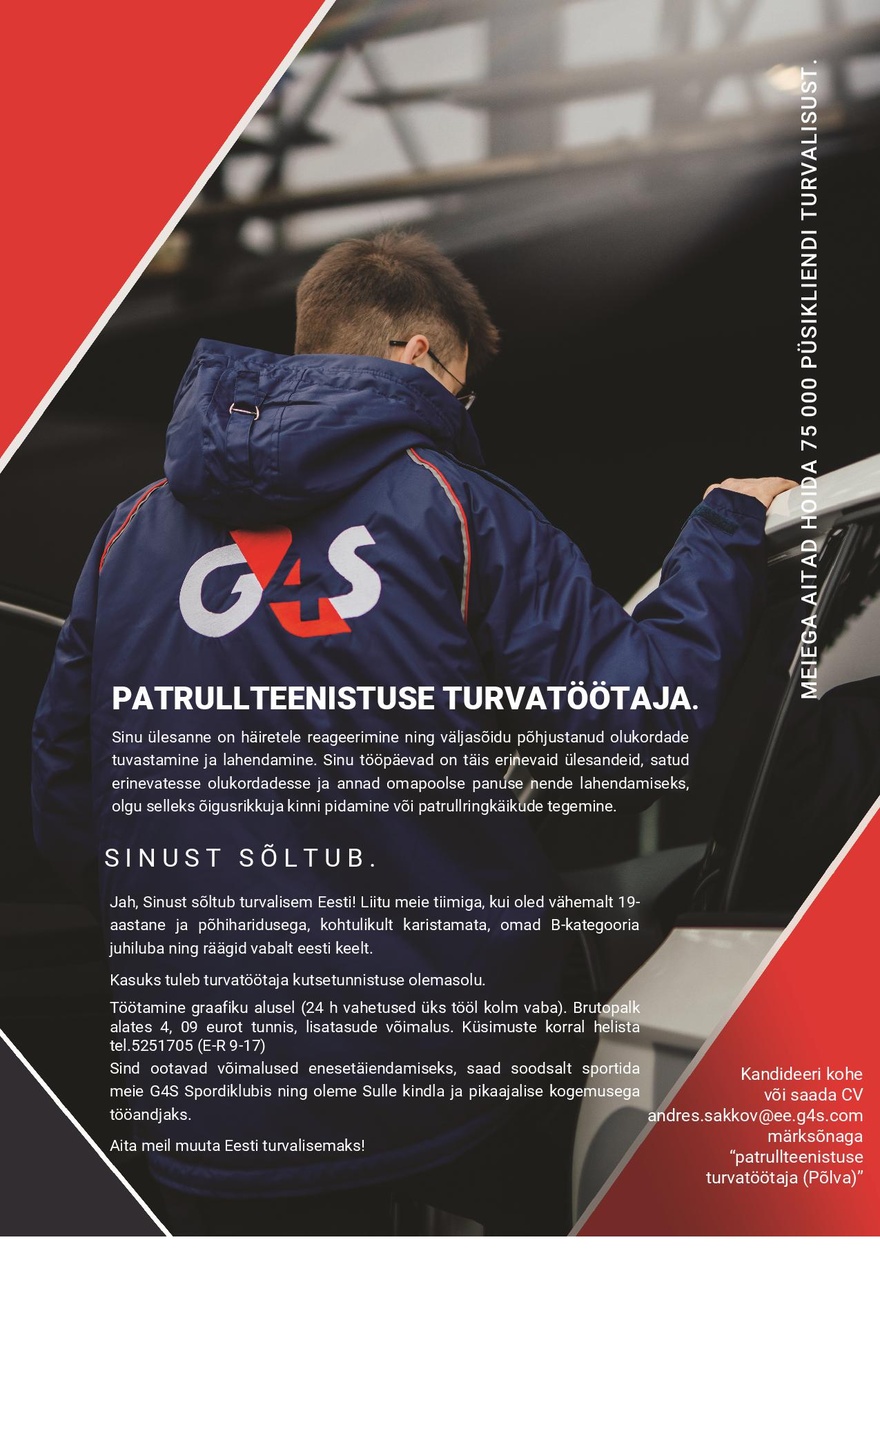 AS G4S Eesti Patrullteenistuse turvatöötaja (Põlva)